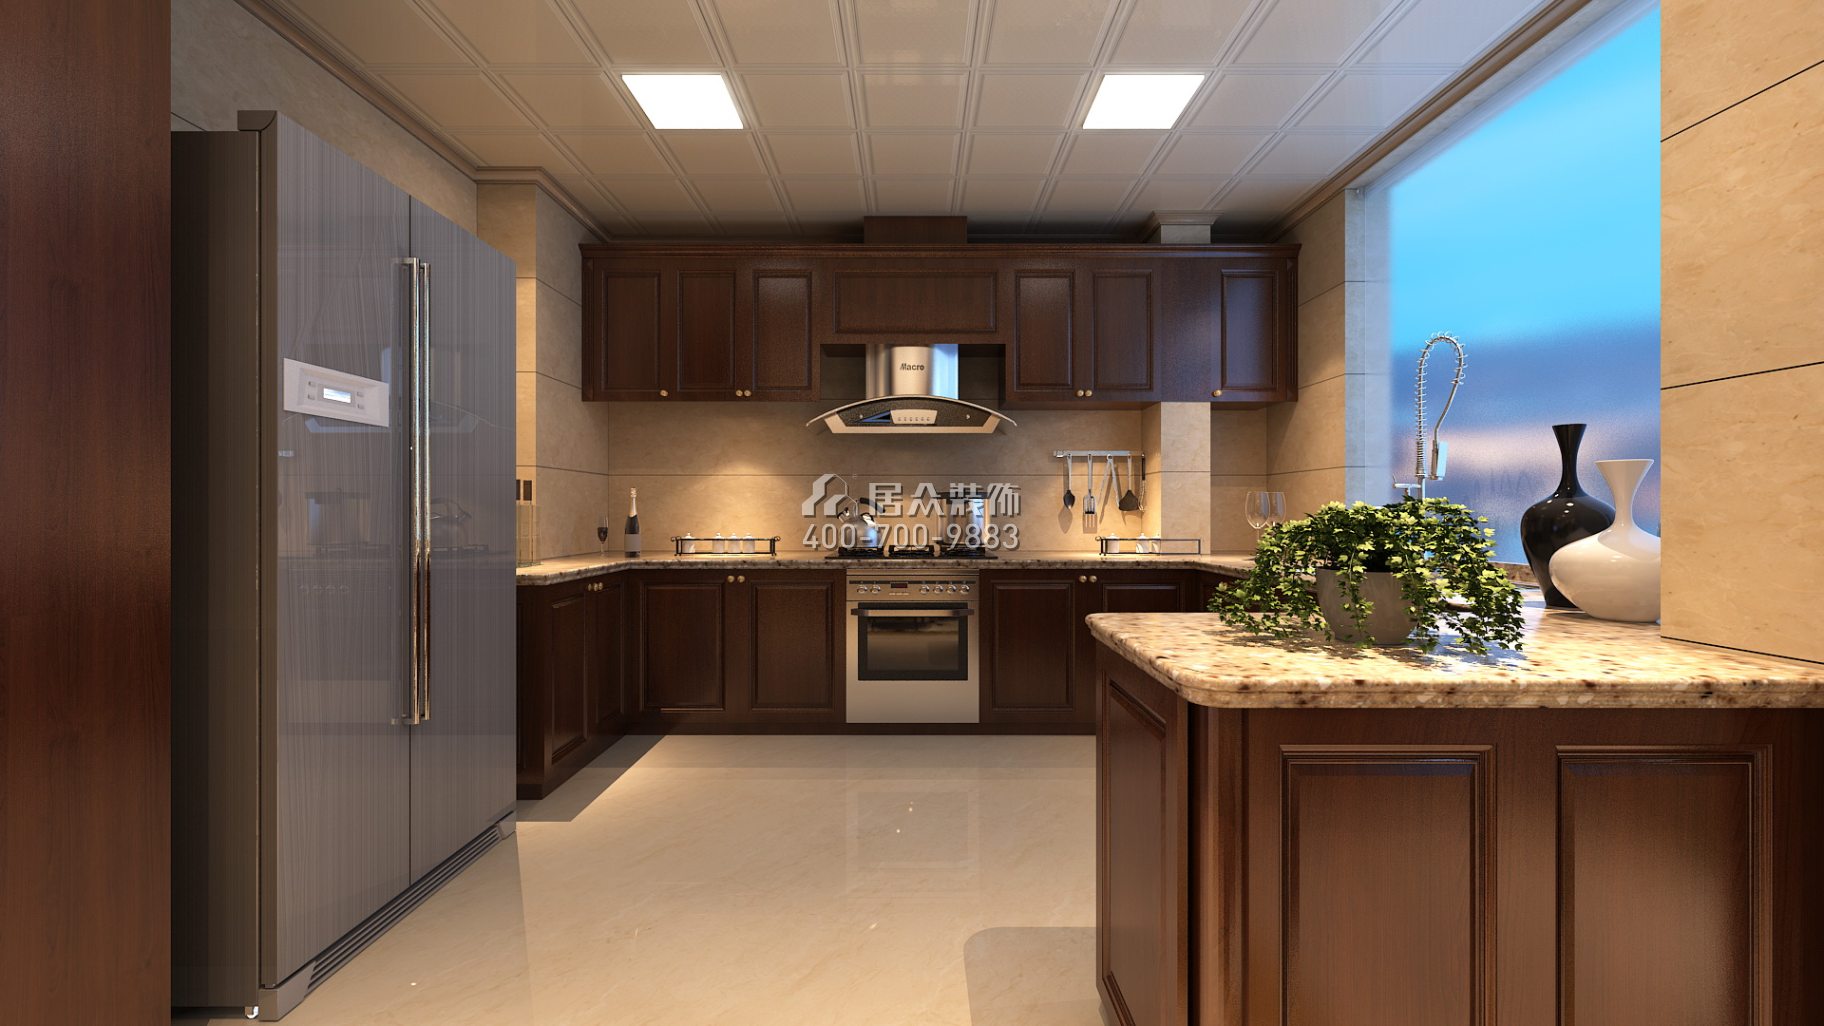 紫御華庭148平方米美式風格平層戶型廚房裝修效果圖